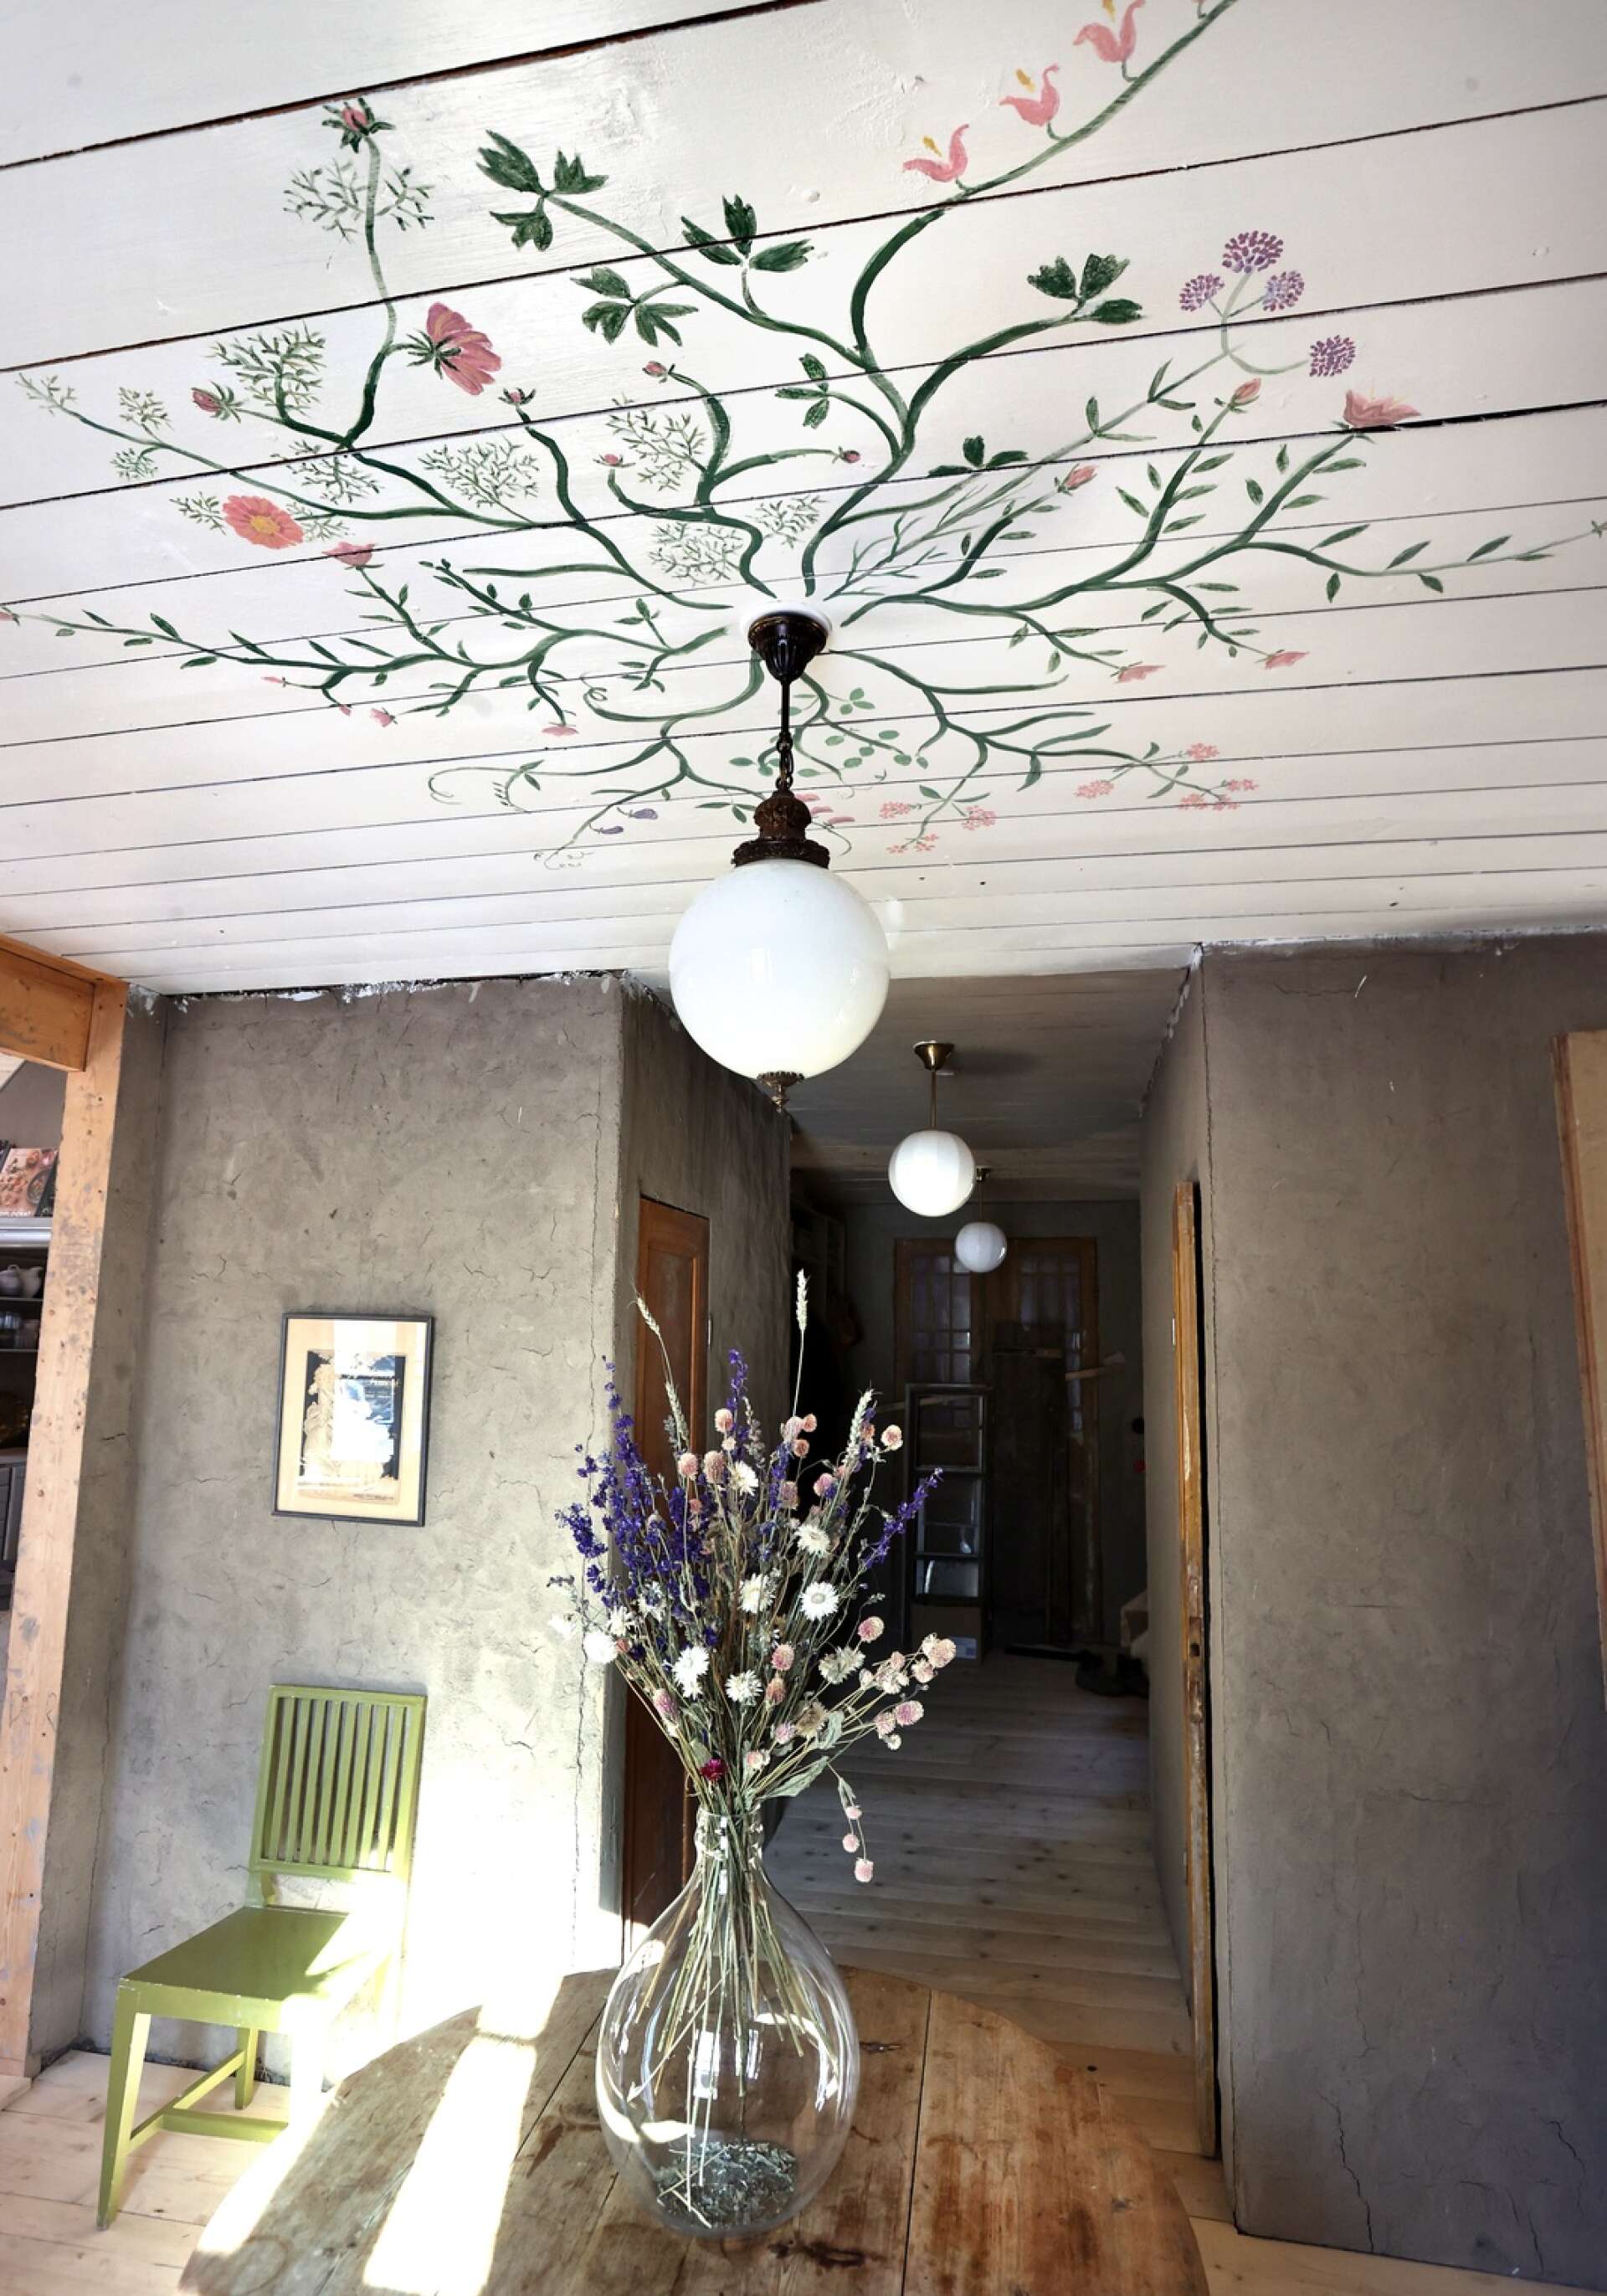 La peinture du plafond du hall a été réalisée par la mère d'Emma Sundh.